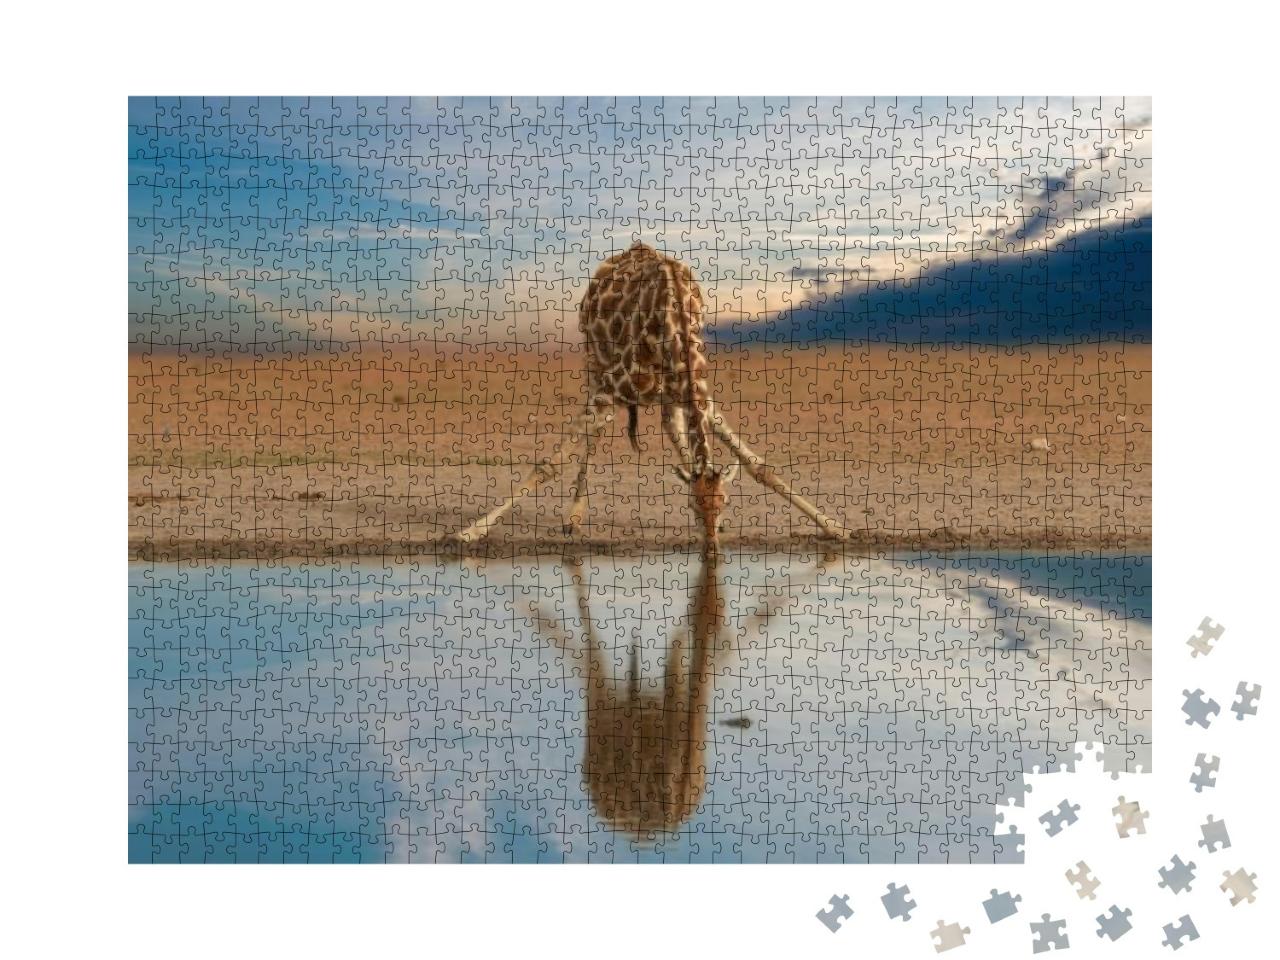 Puzzle 1000 Teile „Trinkende Giraffe am Wasserloch, Etosha-Pfanne, Namibia“